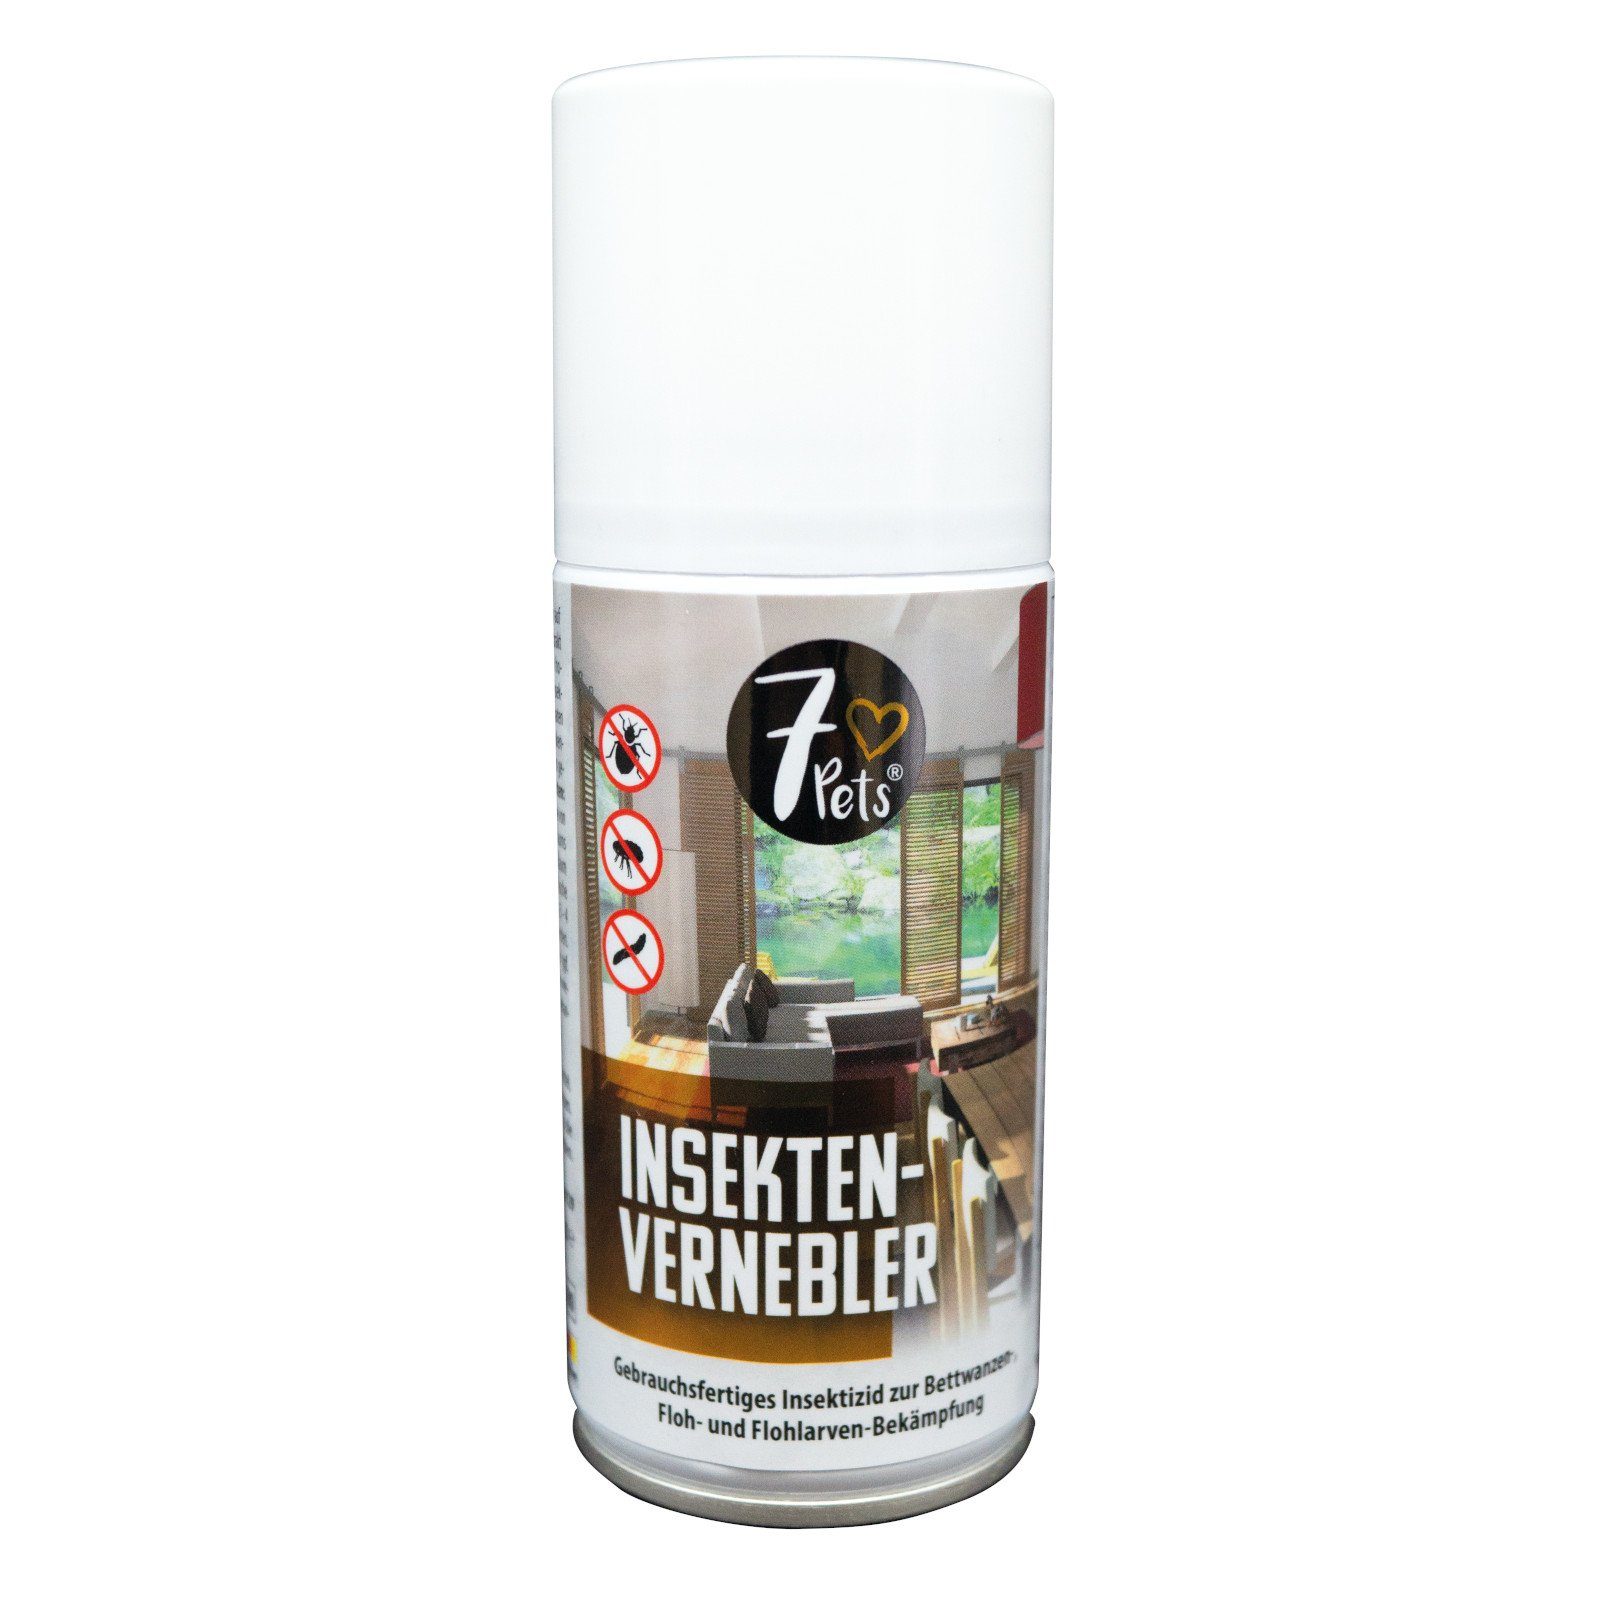 - gegen Insektenvernichtungsmittel Raumvernebler Insekten-Vernebler 150 Ungeziefer 7Pets ml